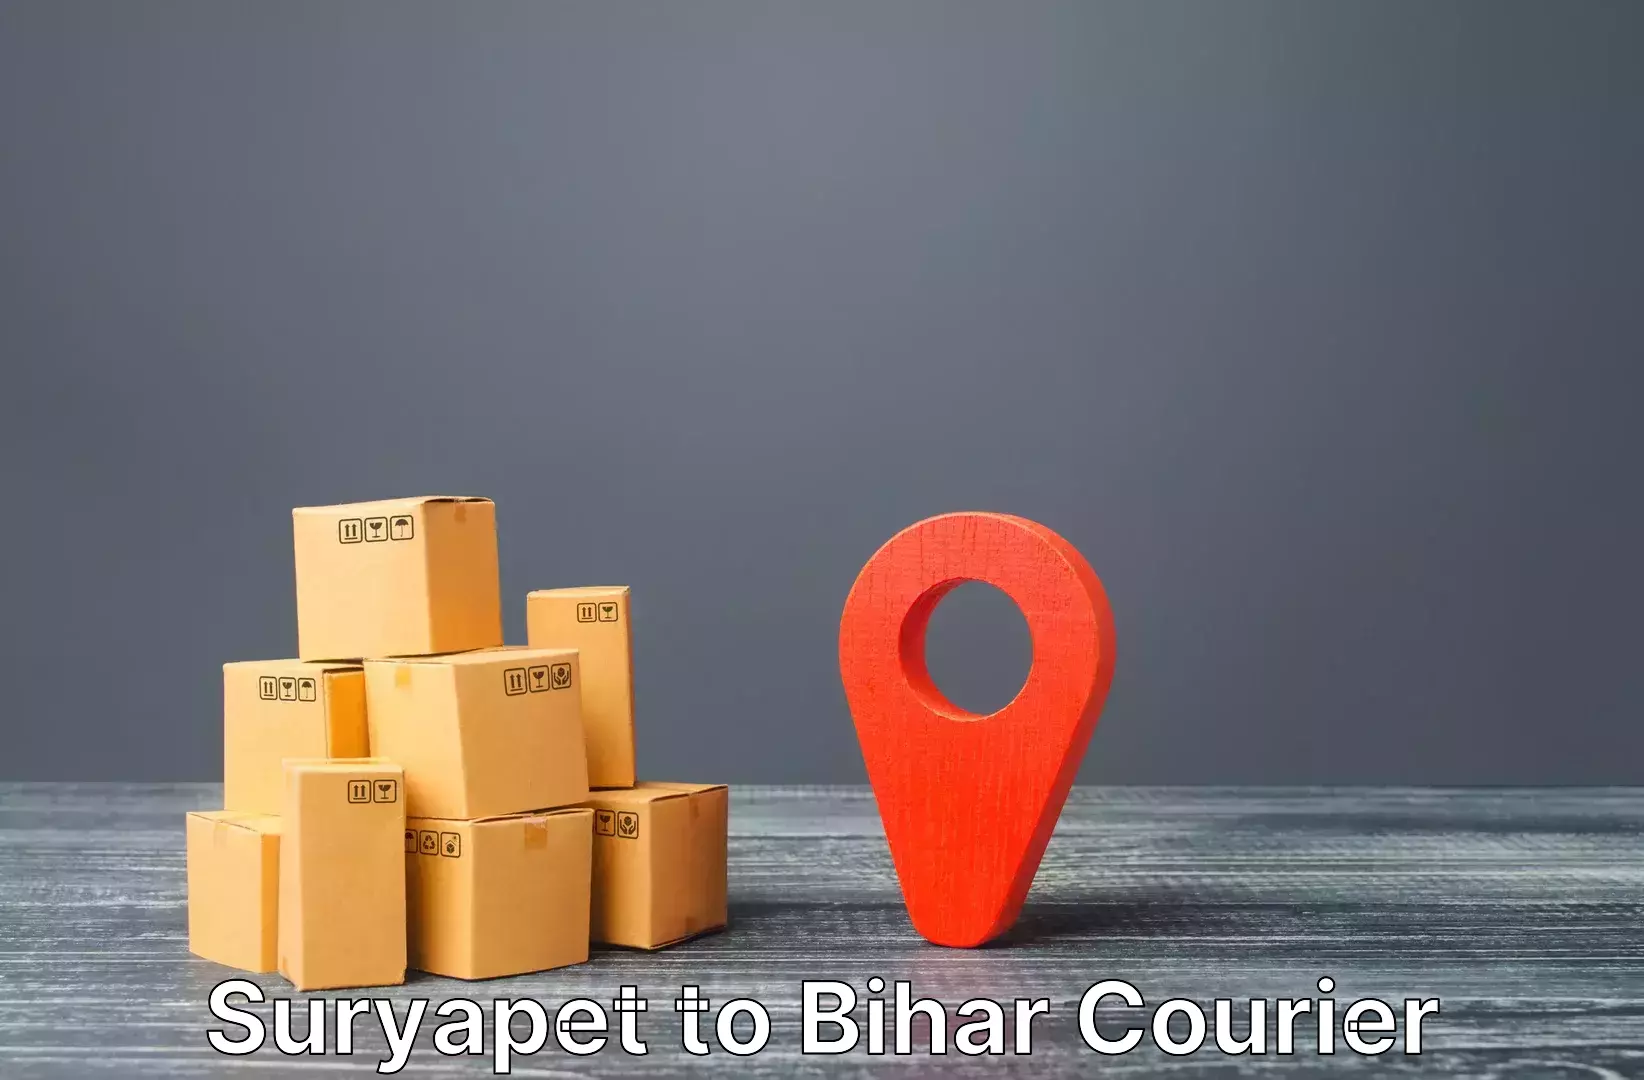 Customized luggage delivery Suryapet to Bhorey